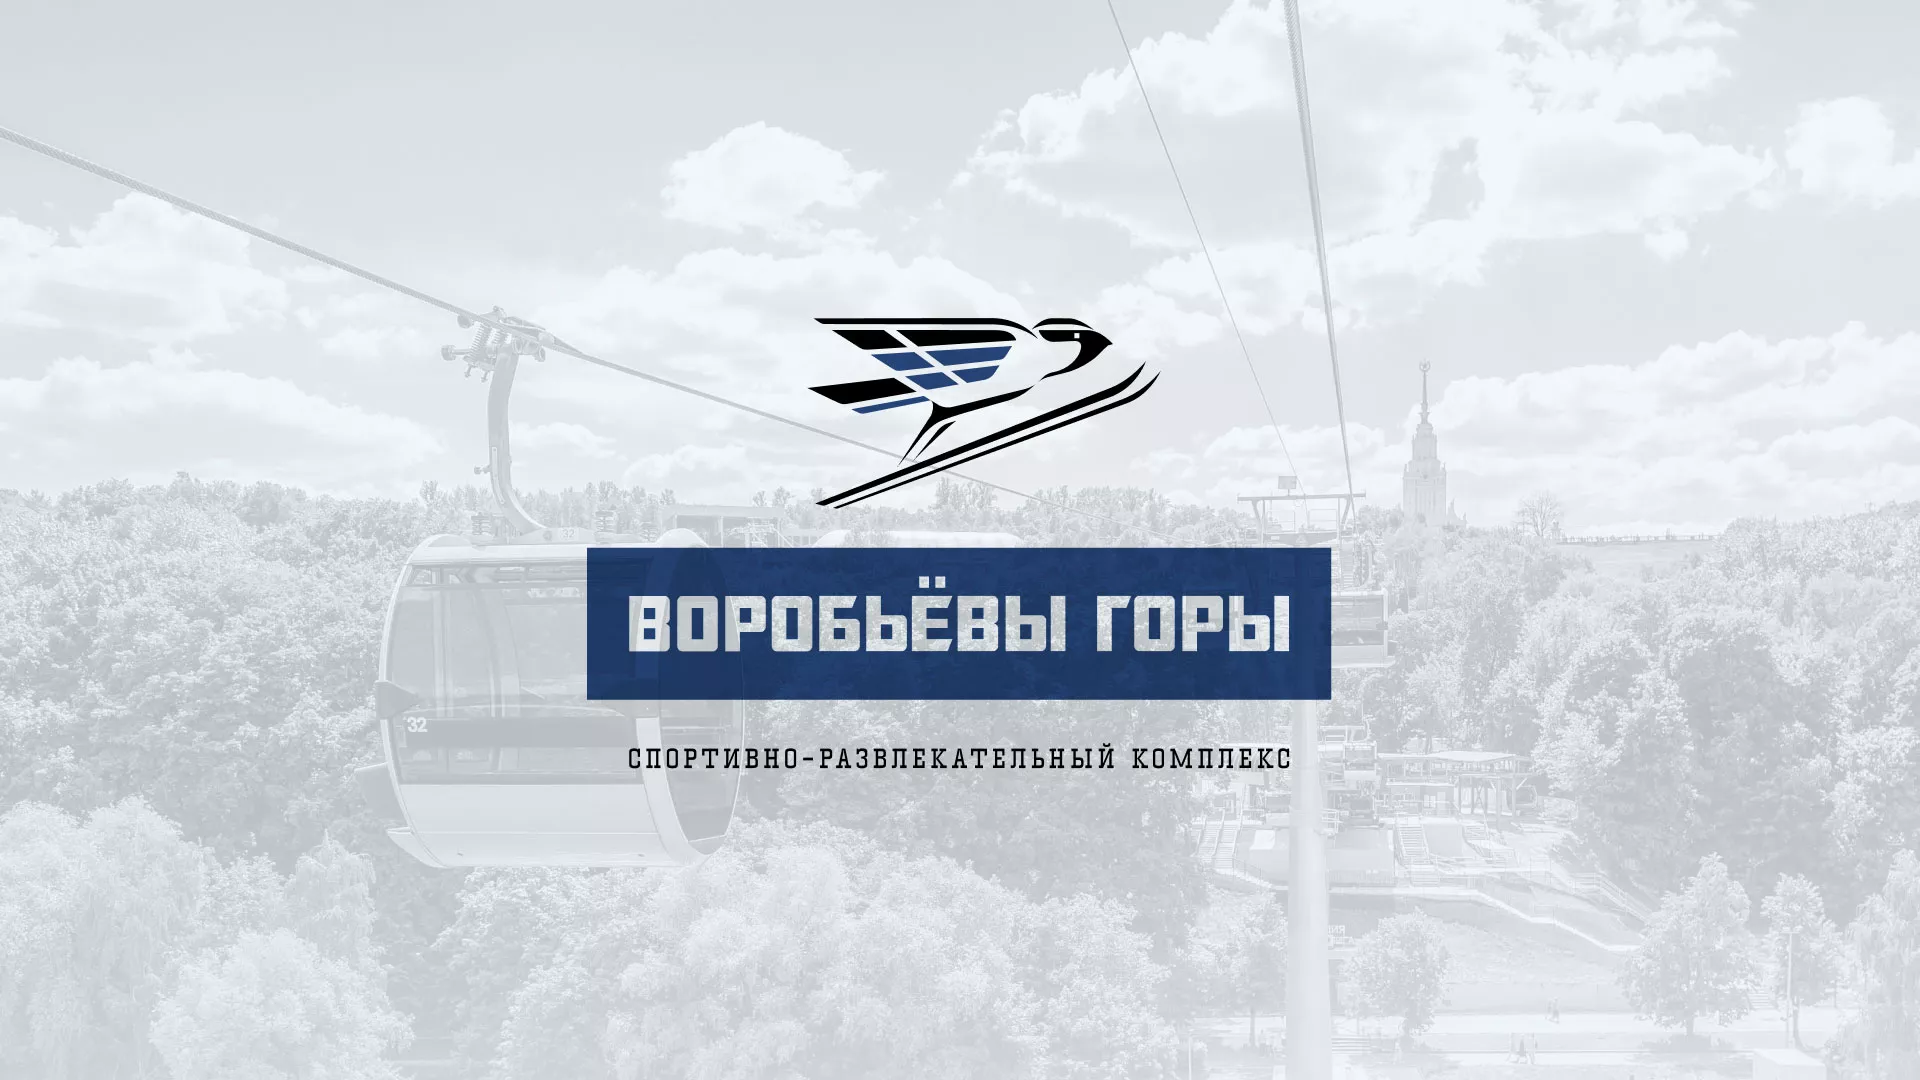 Разработка сайта в Шимановске для спортивно-развлекательного комплекса «Воробьёвы горы»